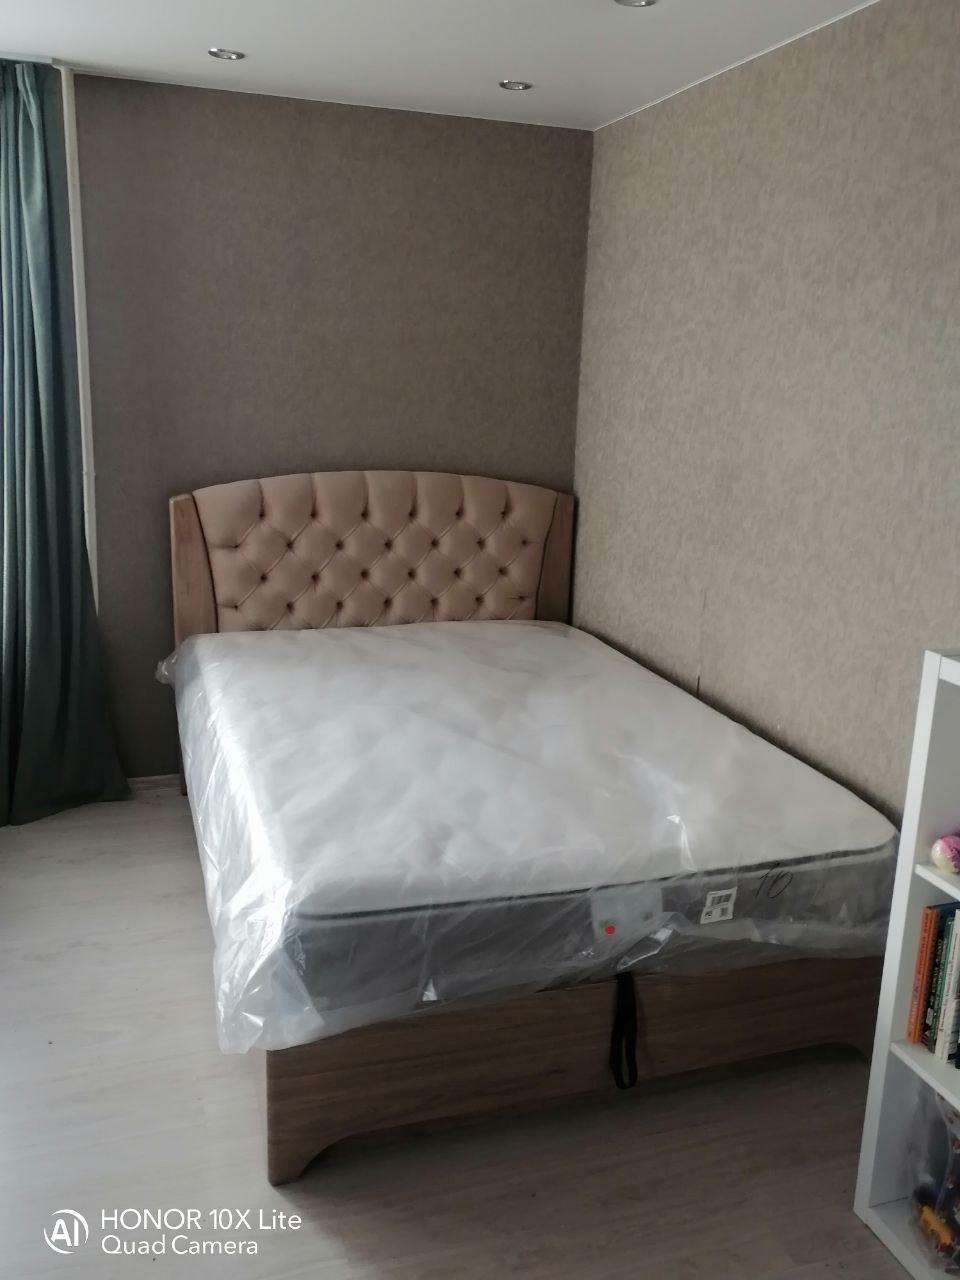 Односпальная кровать "Милан" 90 х 190 с подъемным механизмом цвет орех серебро / best 06